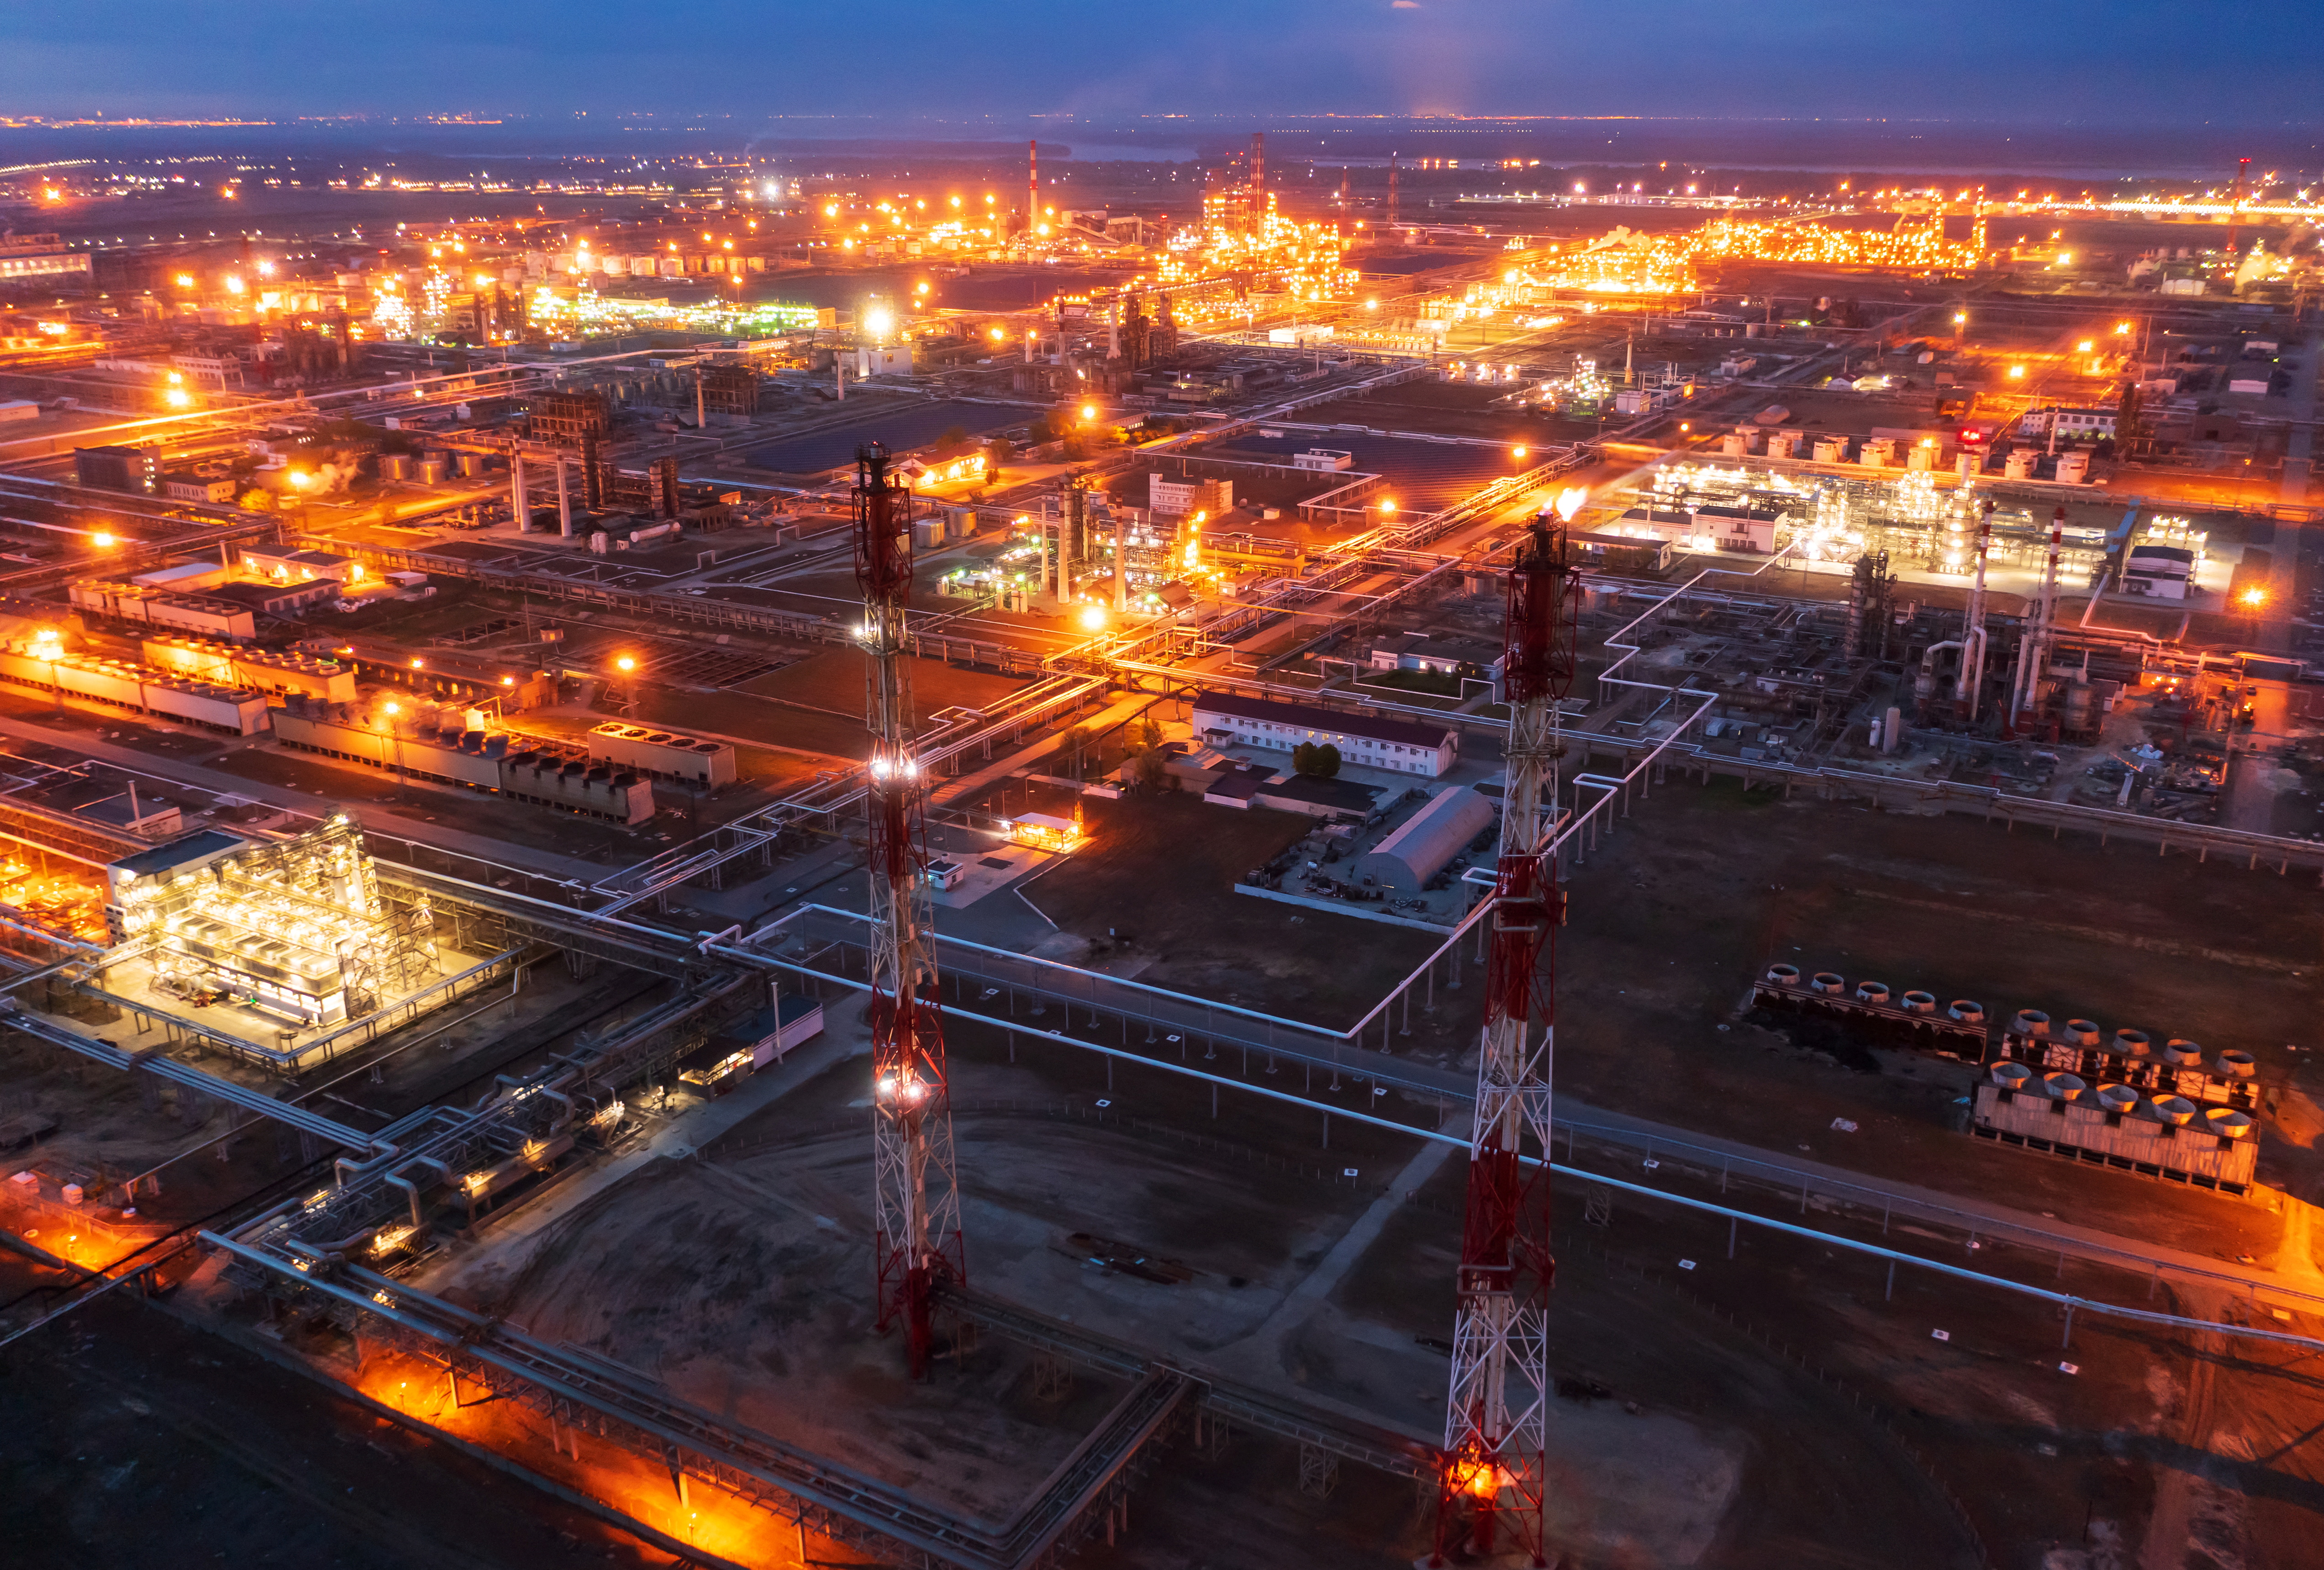 Vista general que muestra la refinería de petróleo de Lukoil en Volgogrado.